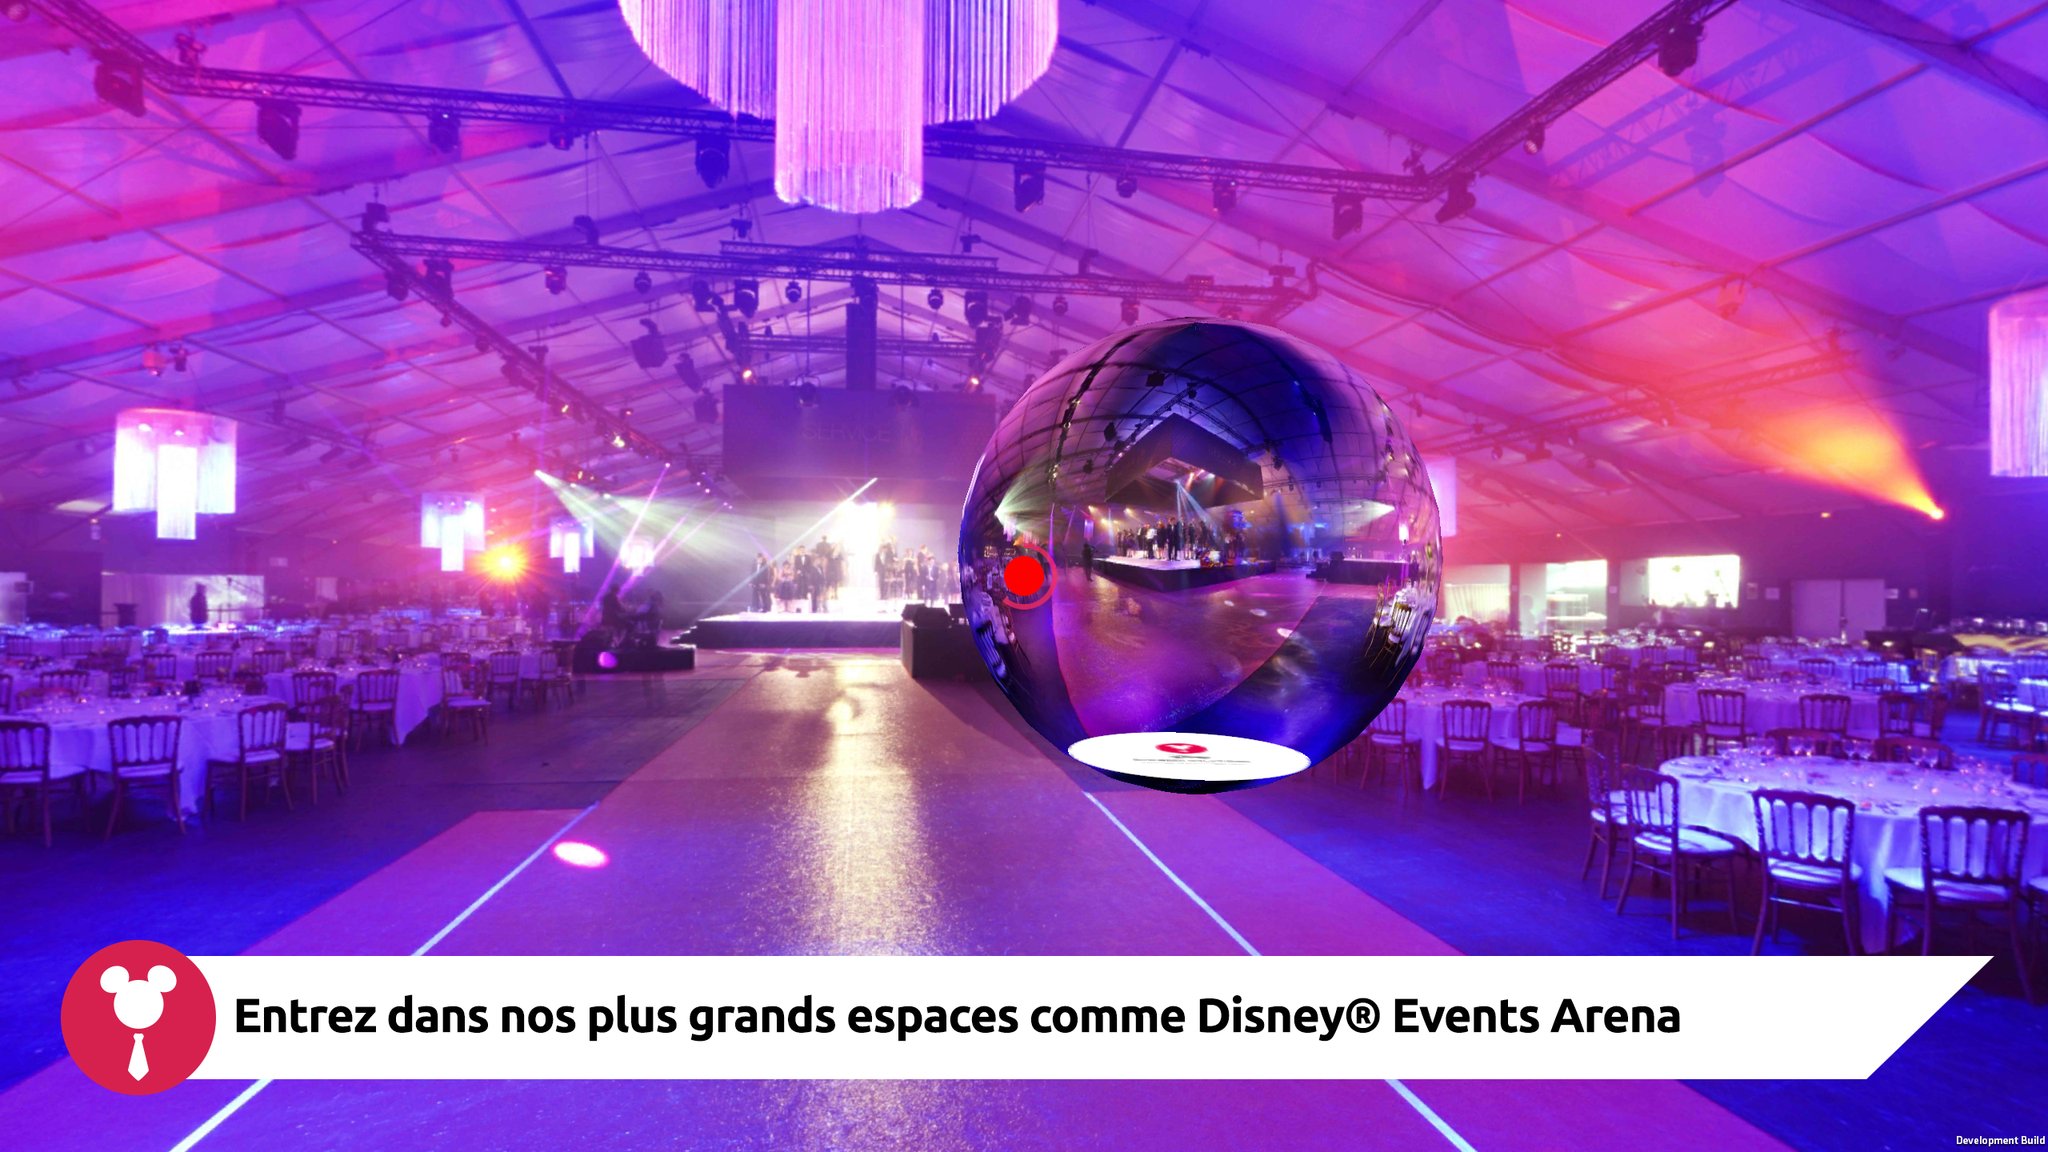 Les espaces MICE de Disneyland Paris comme si vous y étiez grâce à une appli